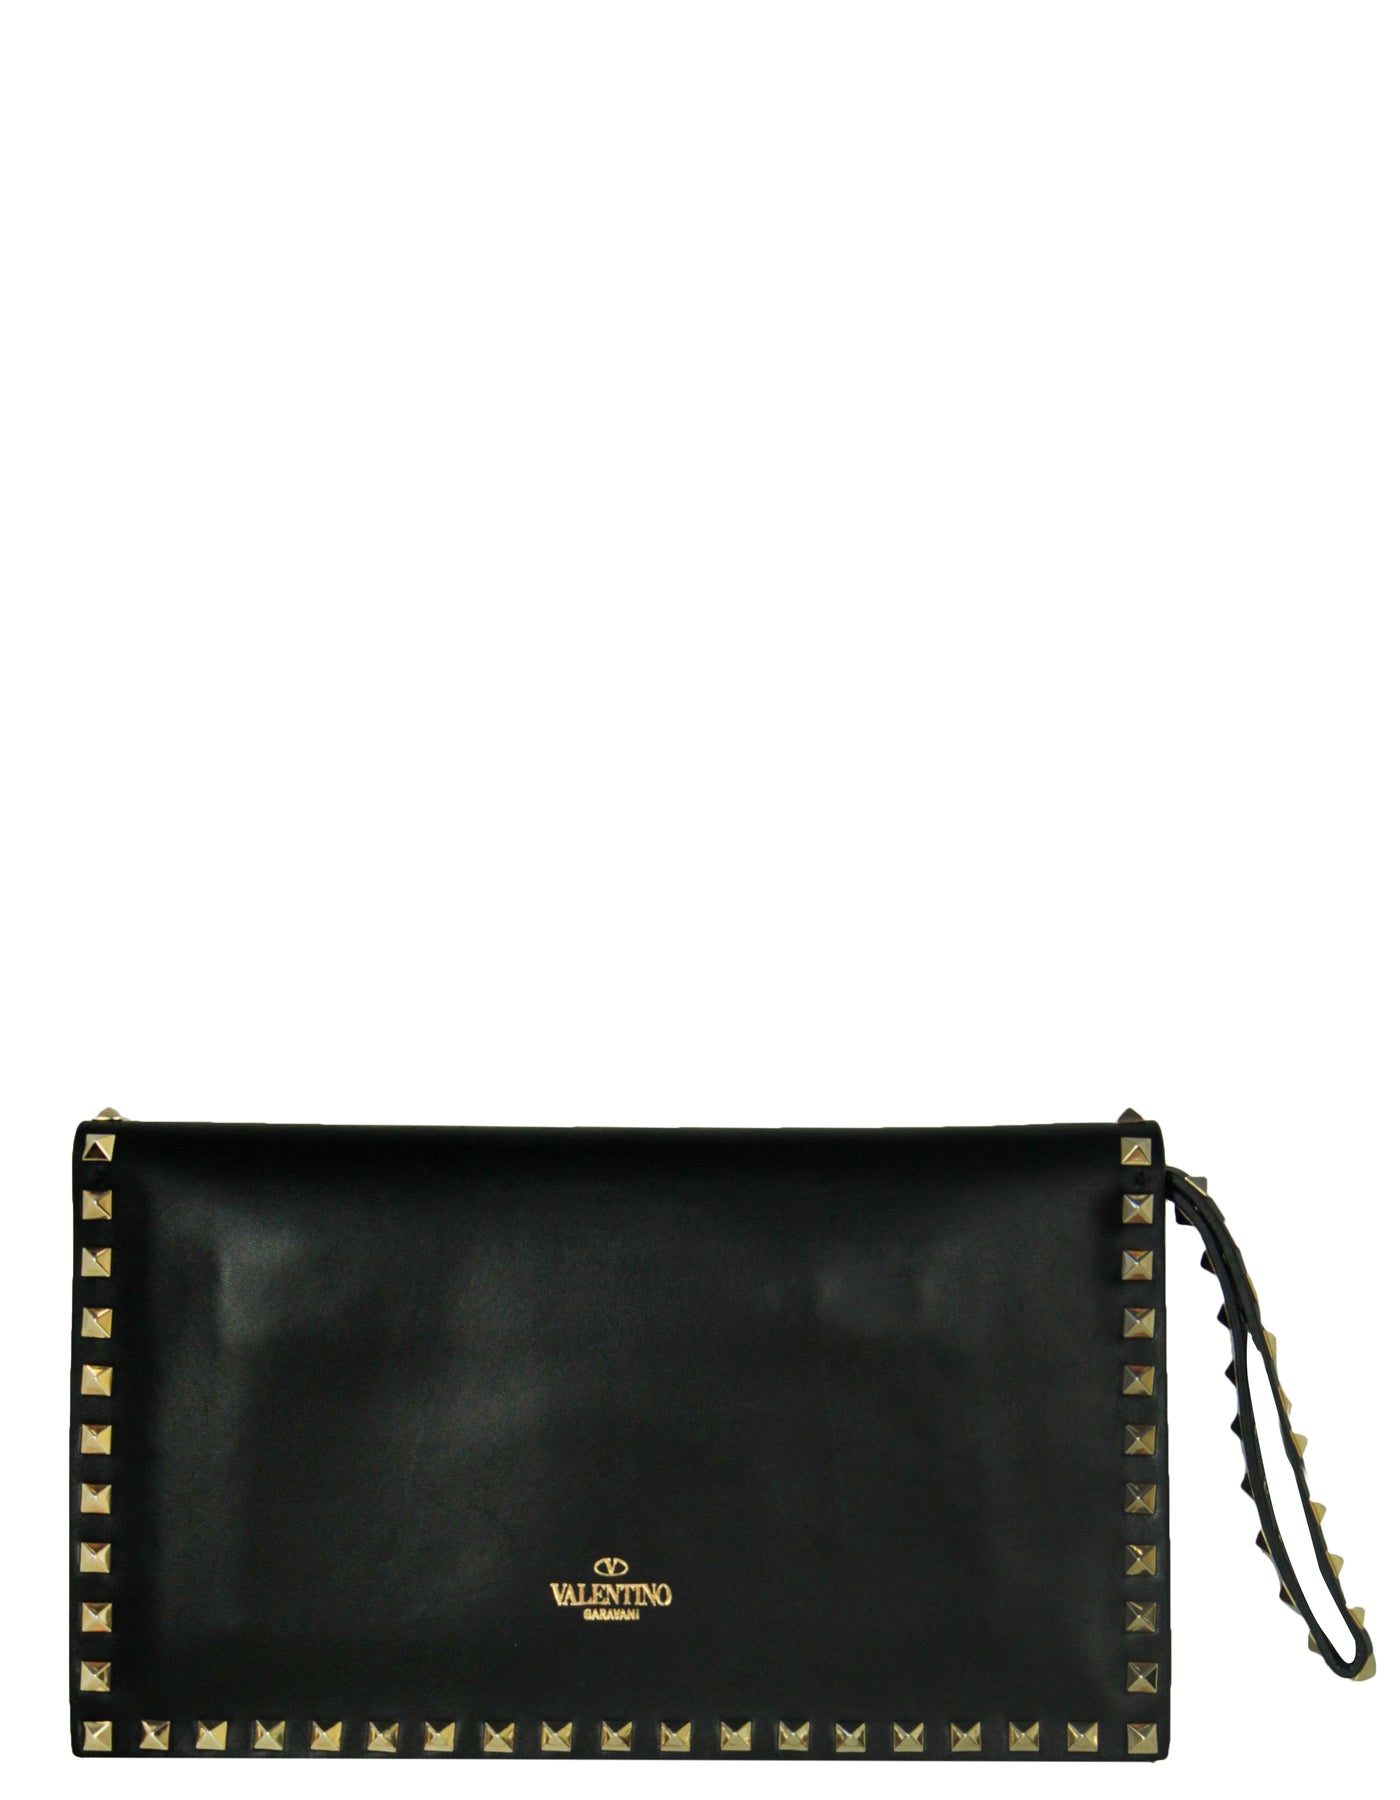 Valentino Black Leather Rockstud Bracelet Clutch Bag